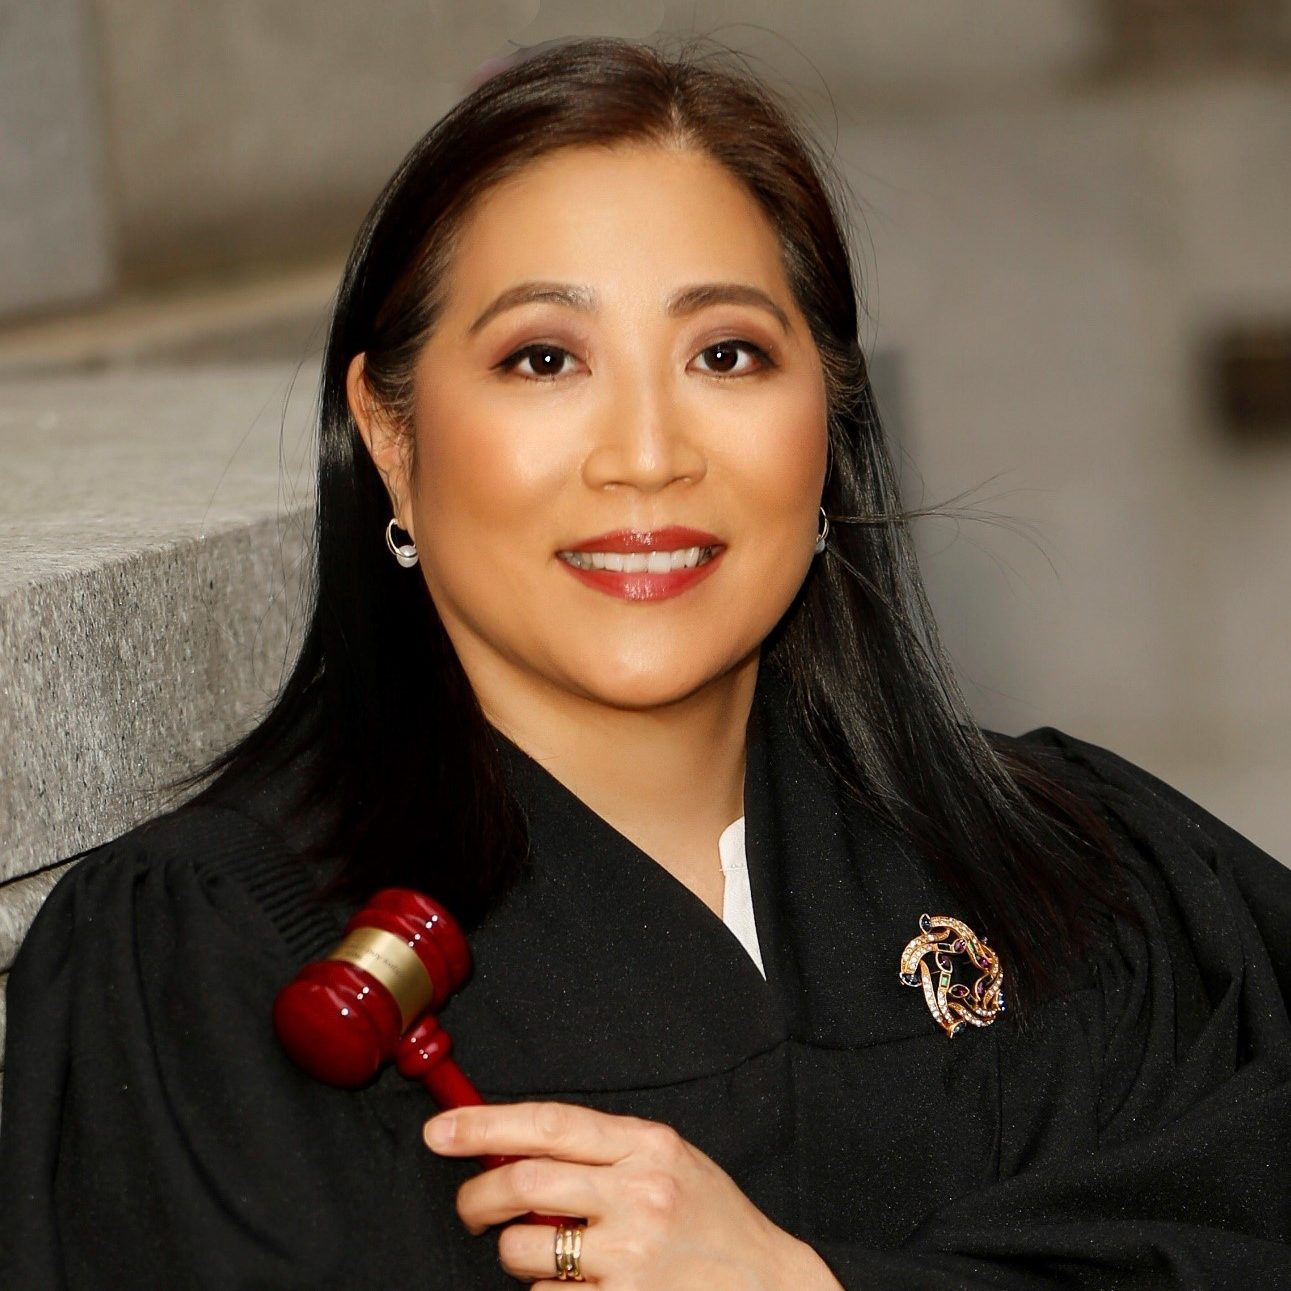 Judge Kim